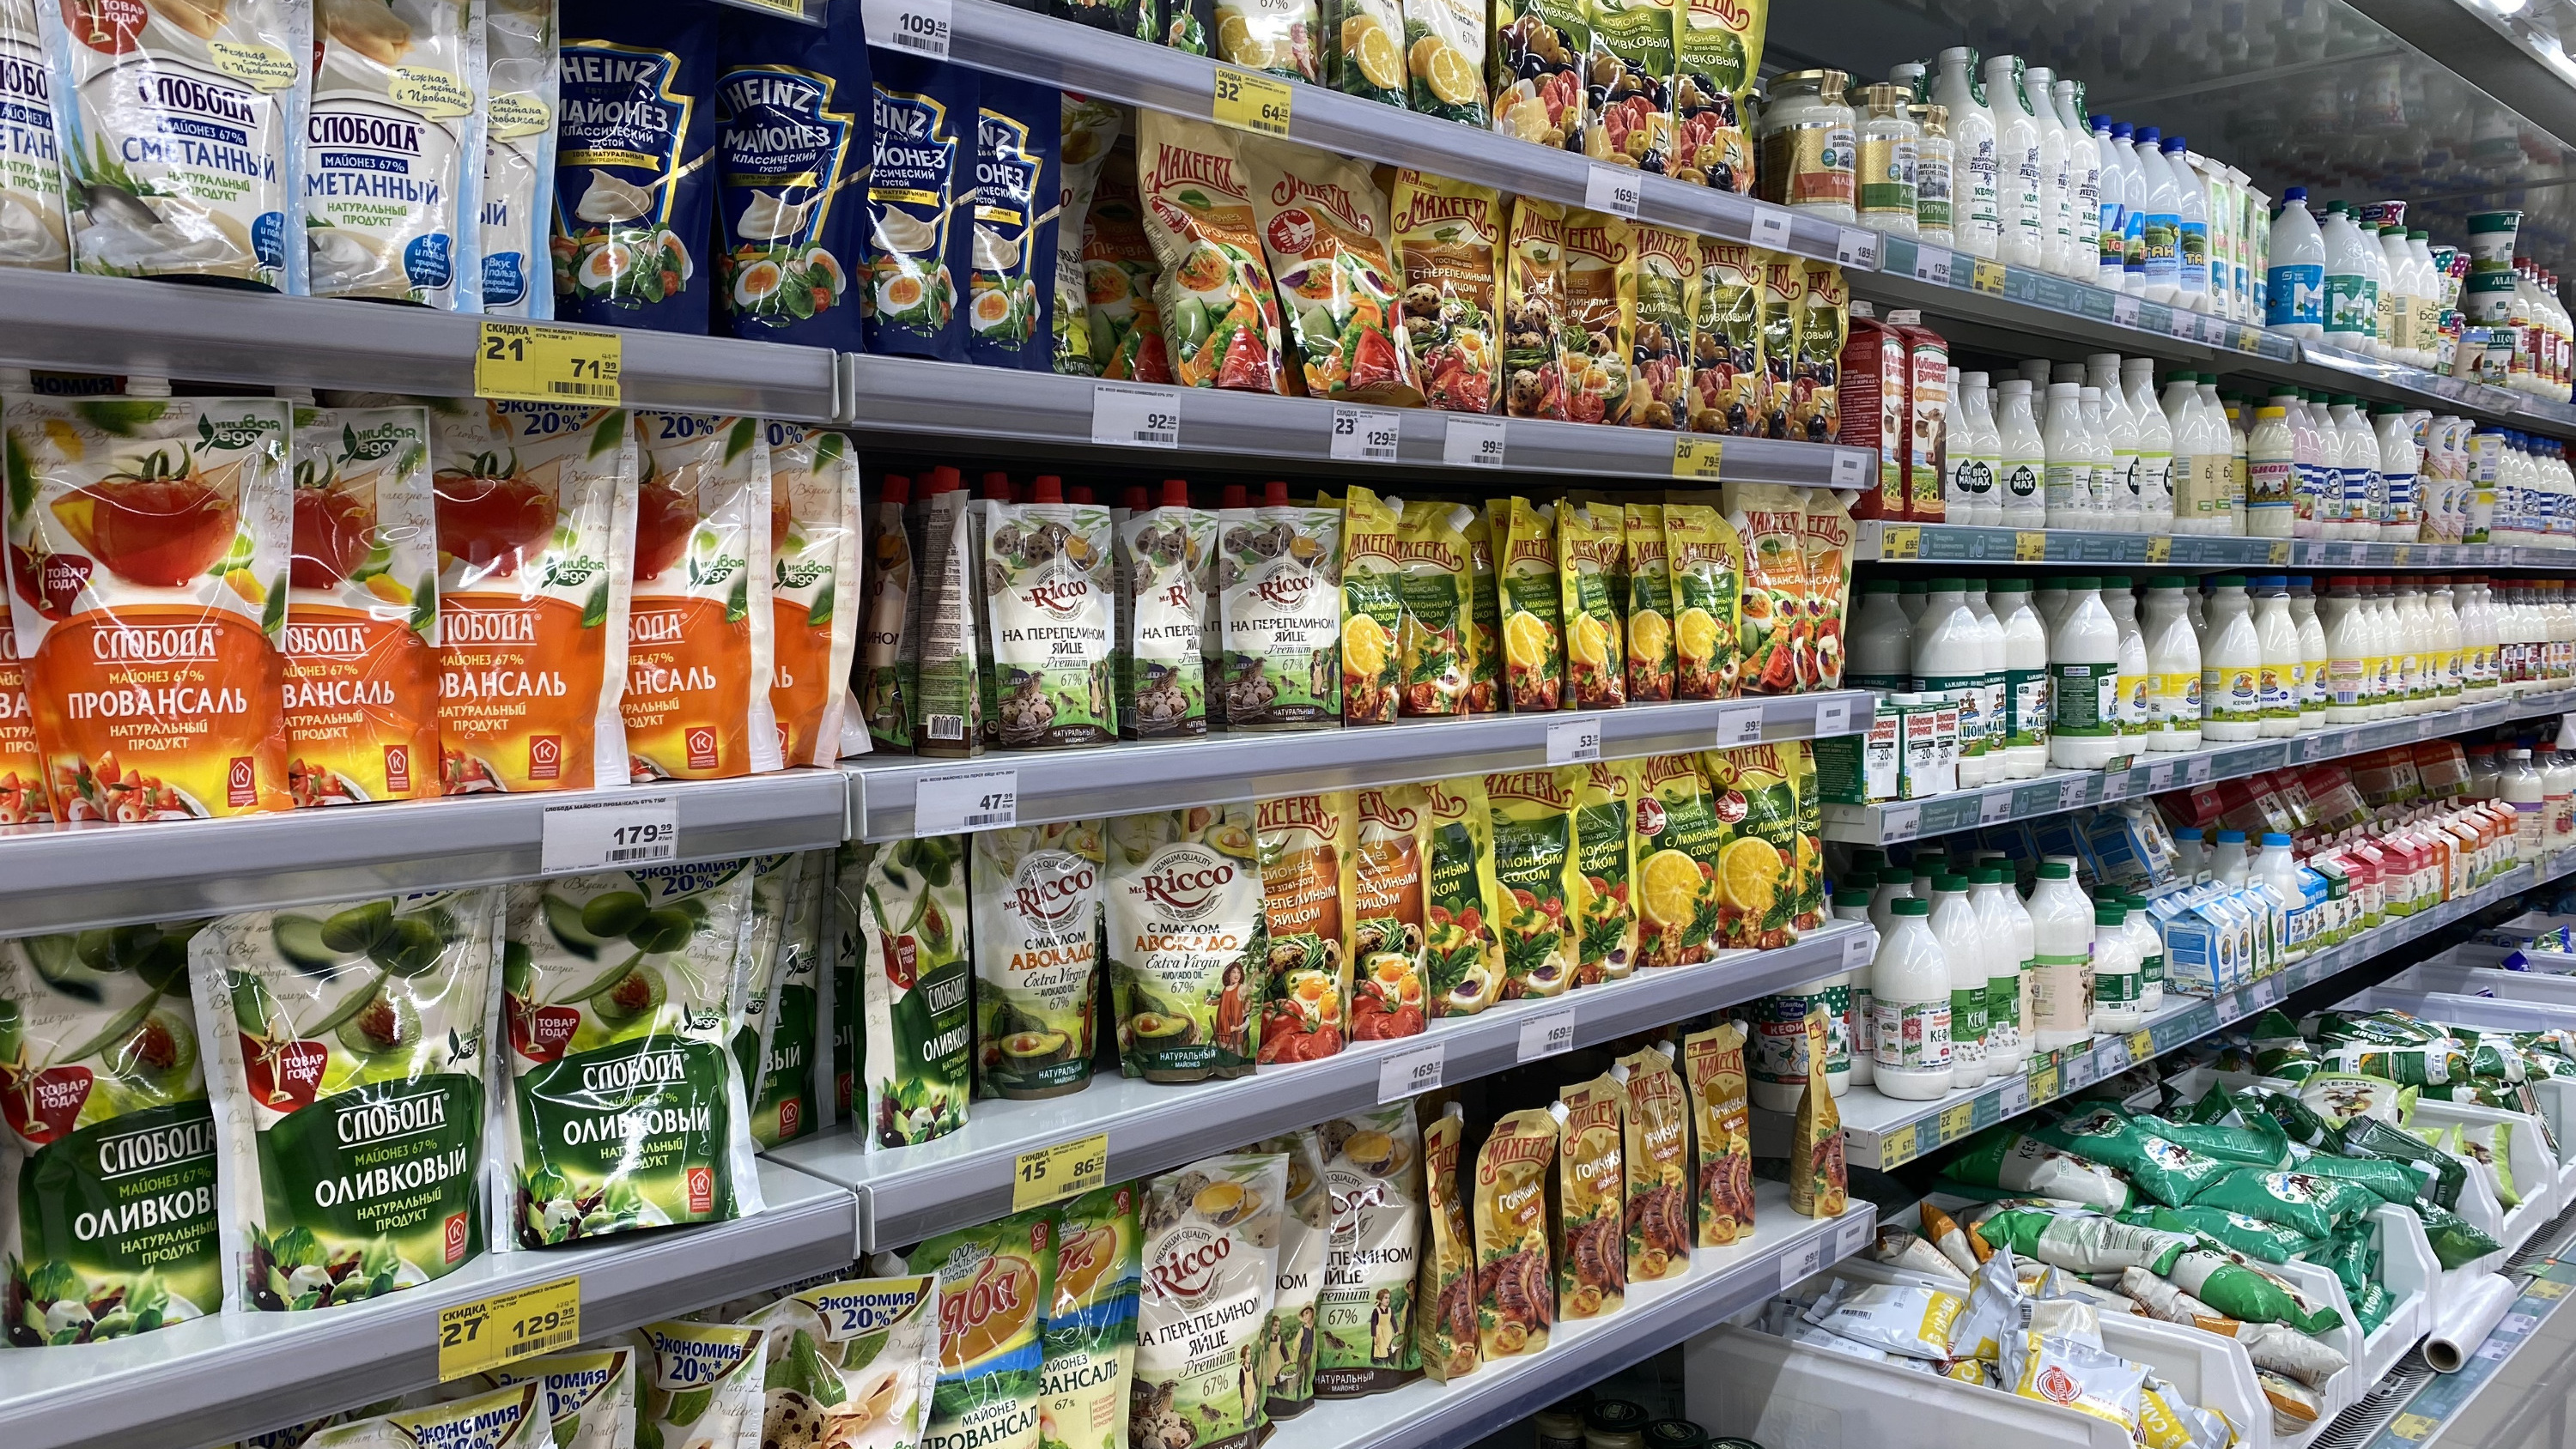 Как изменились цены на продукты в Краснодаре? Проинспектировали супермаркет в спальном микрорайоне